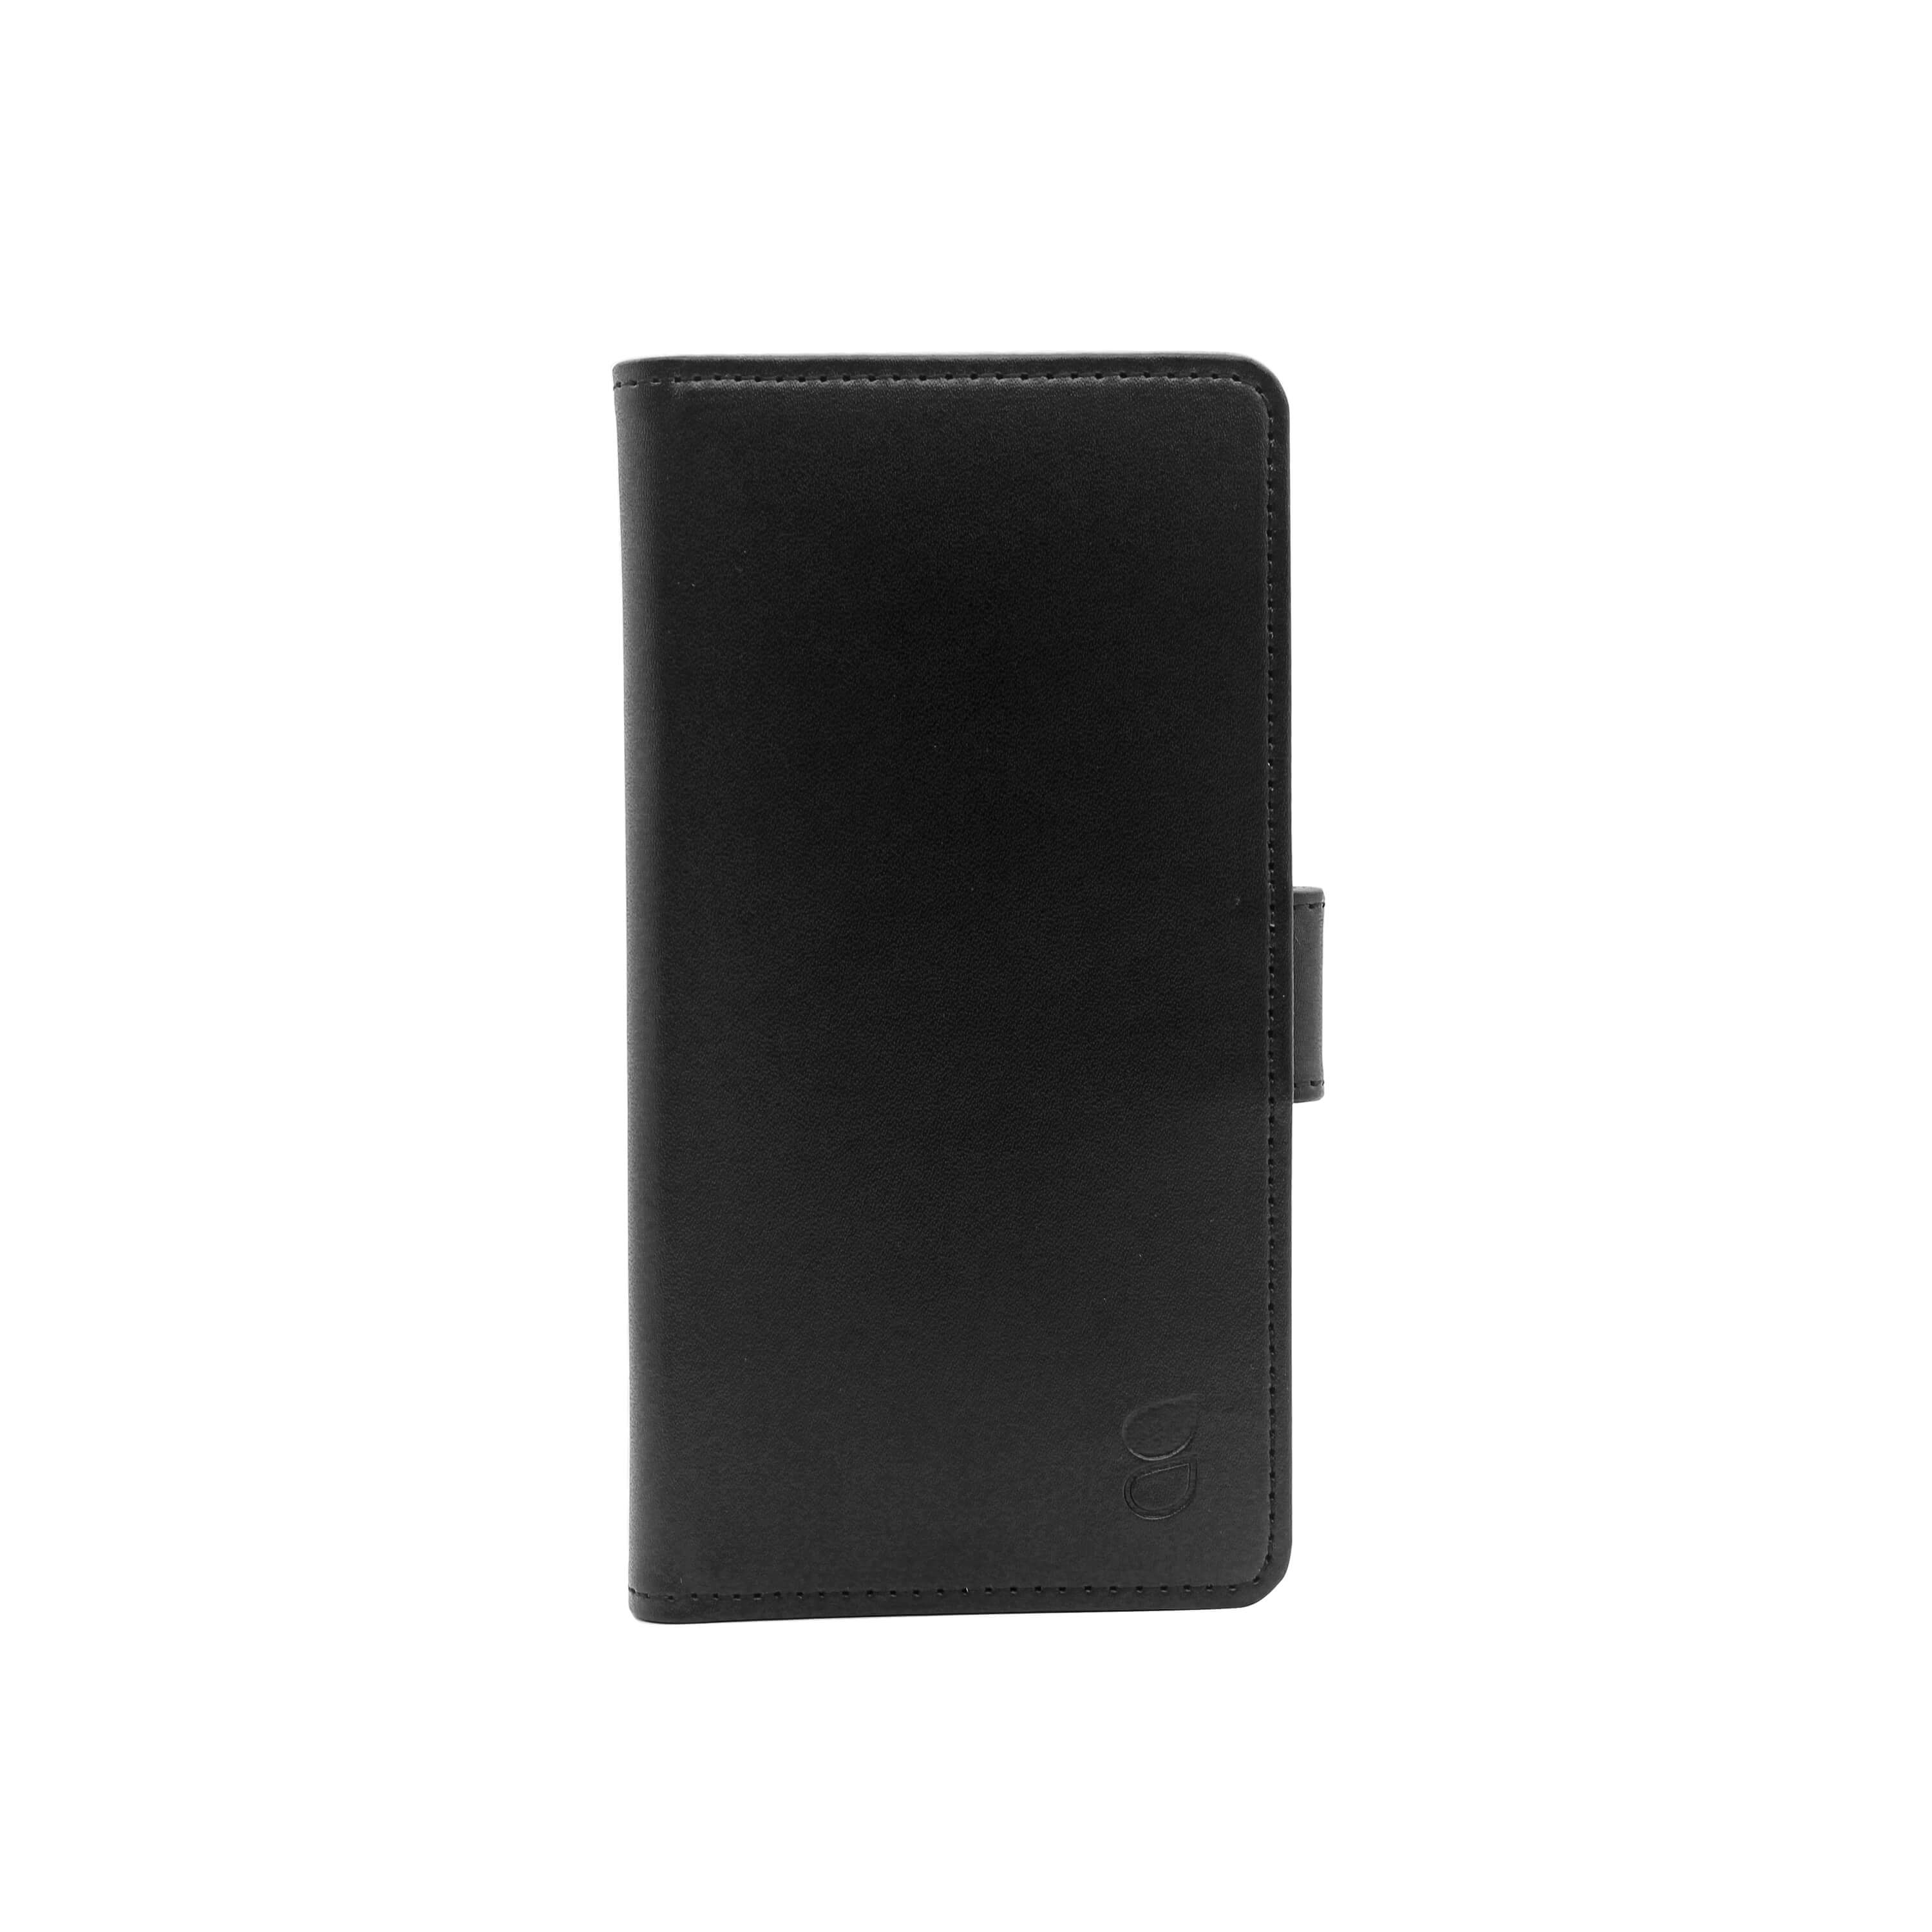 GEAR Wallet Case Huawei P20 Pro Black